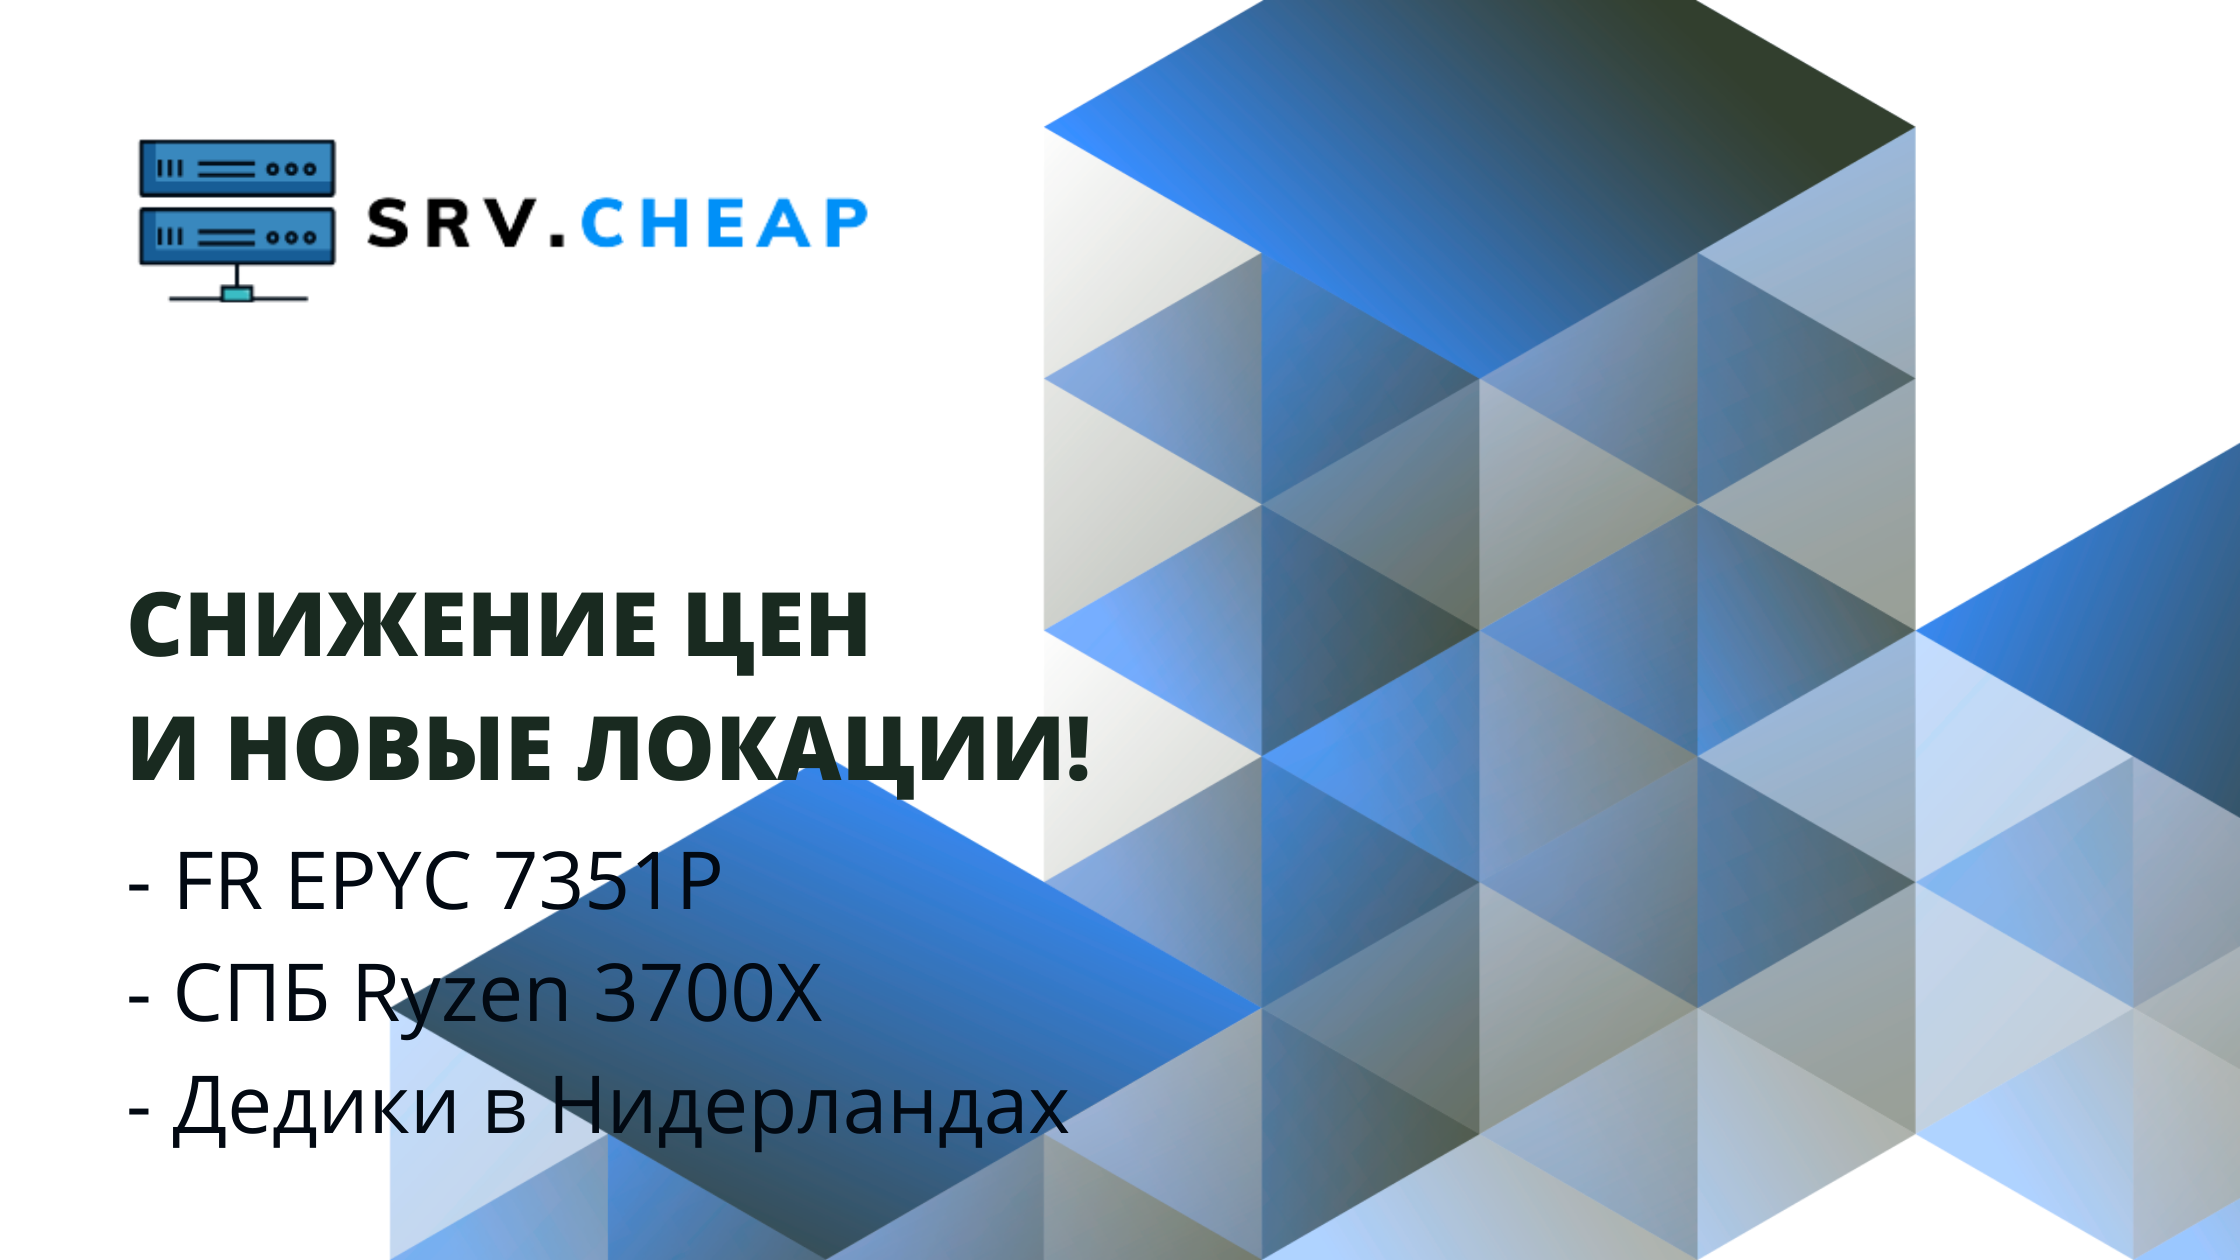 srv.cheap снижение цен и новые локации